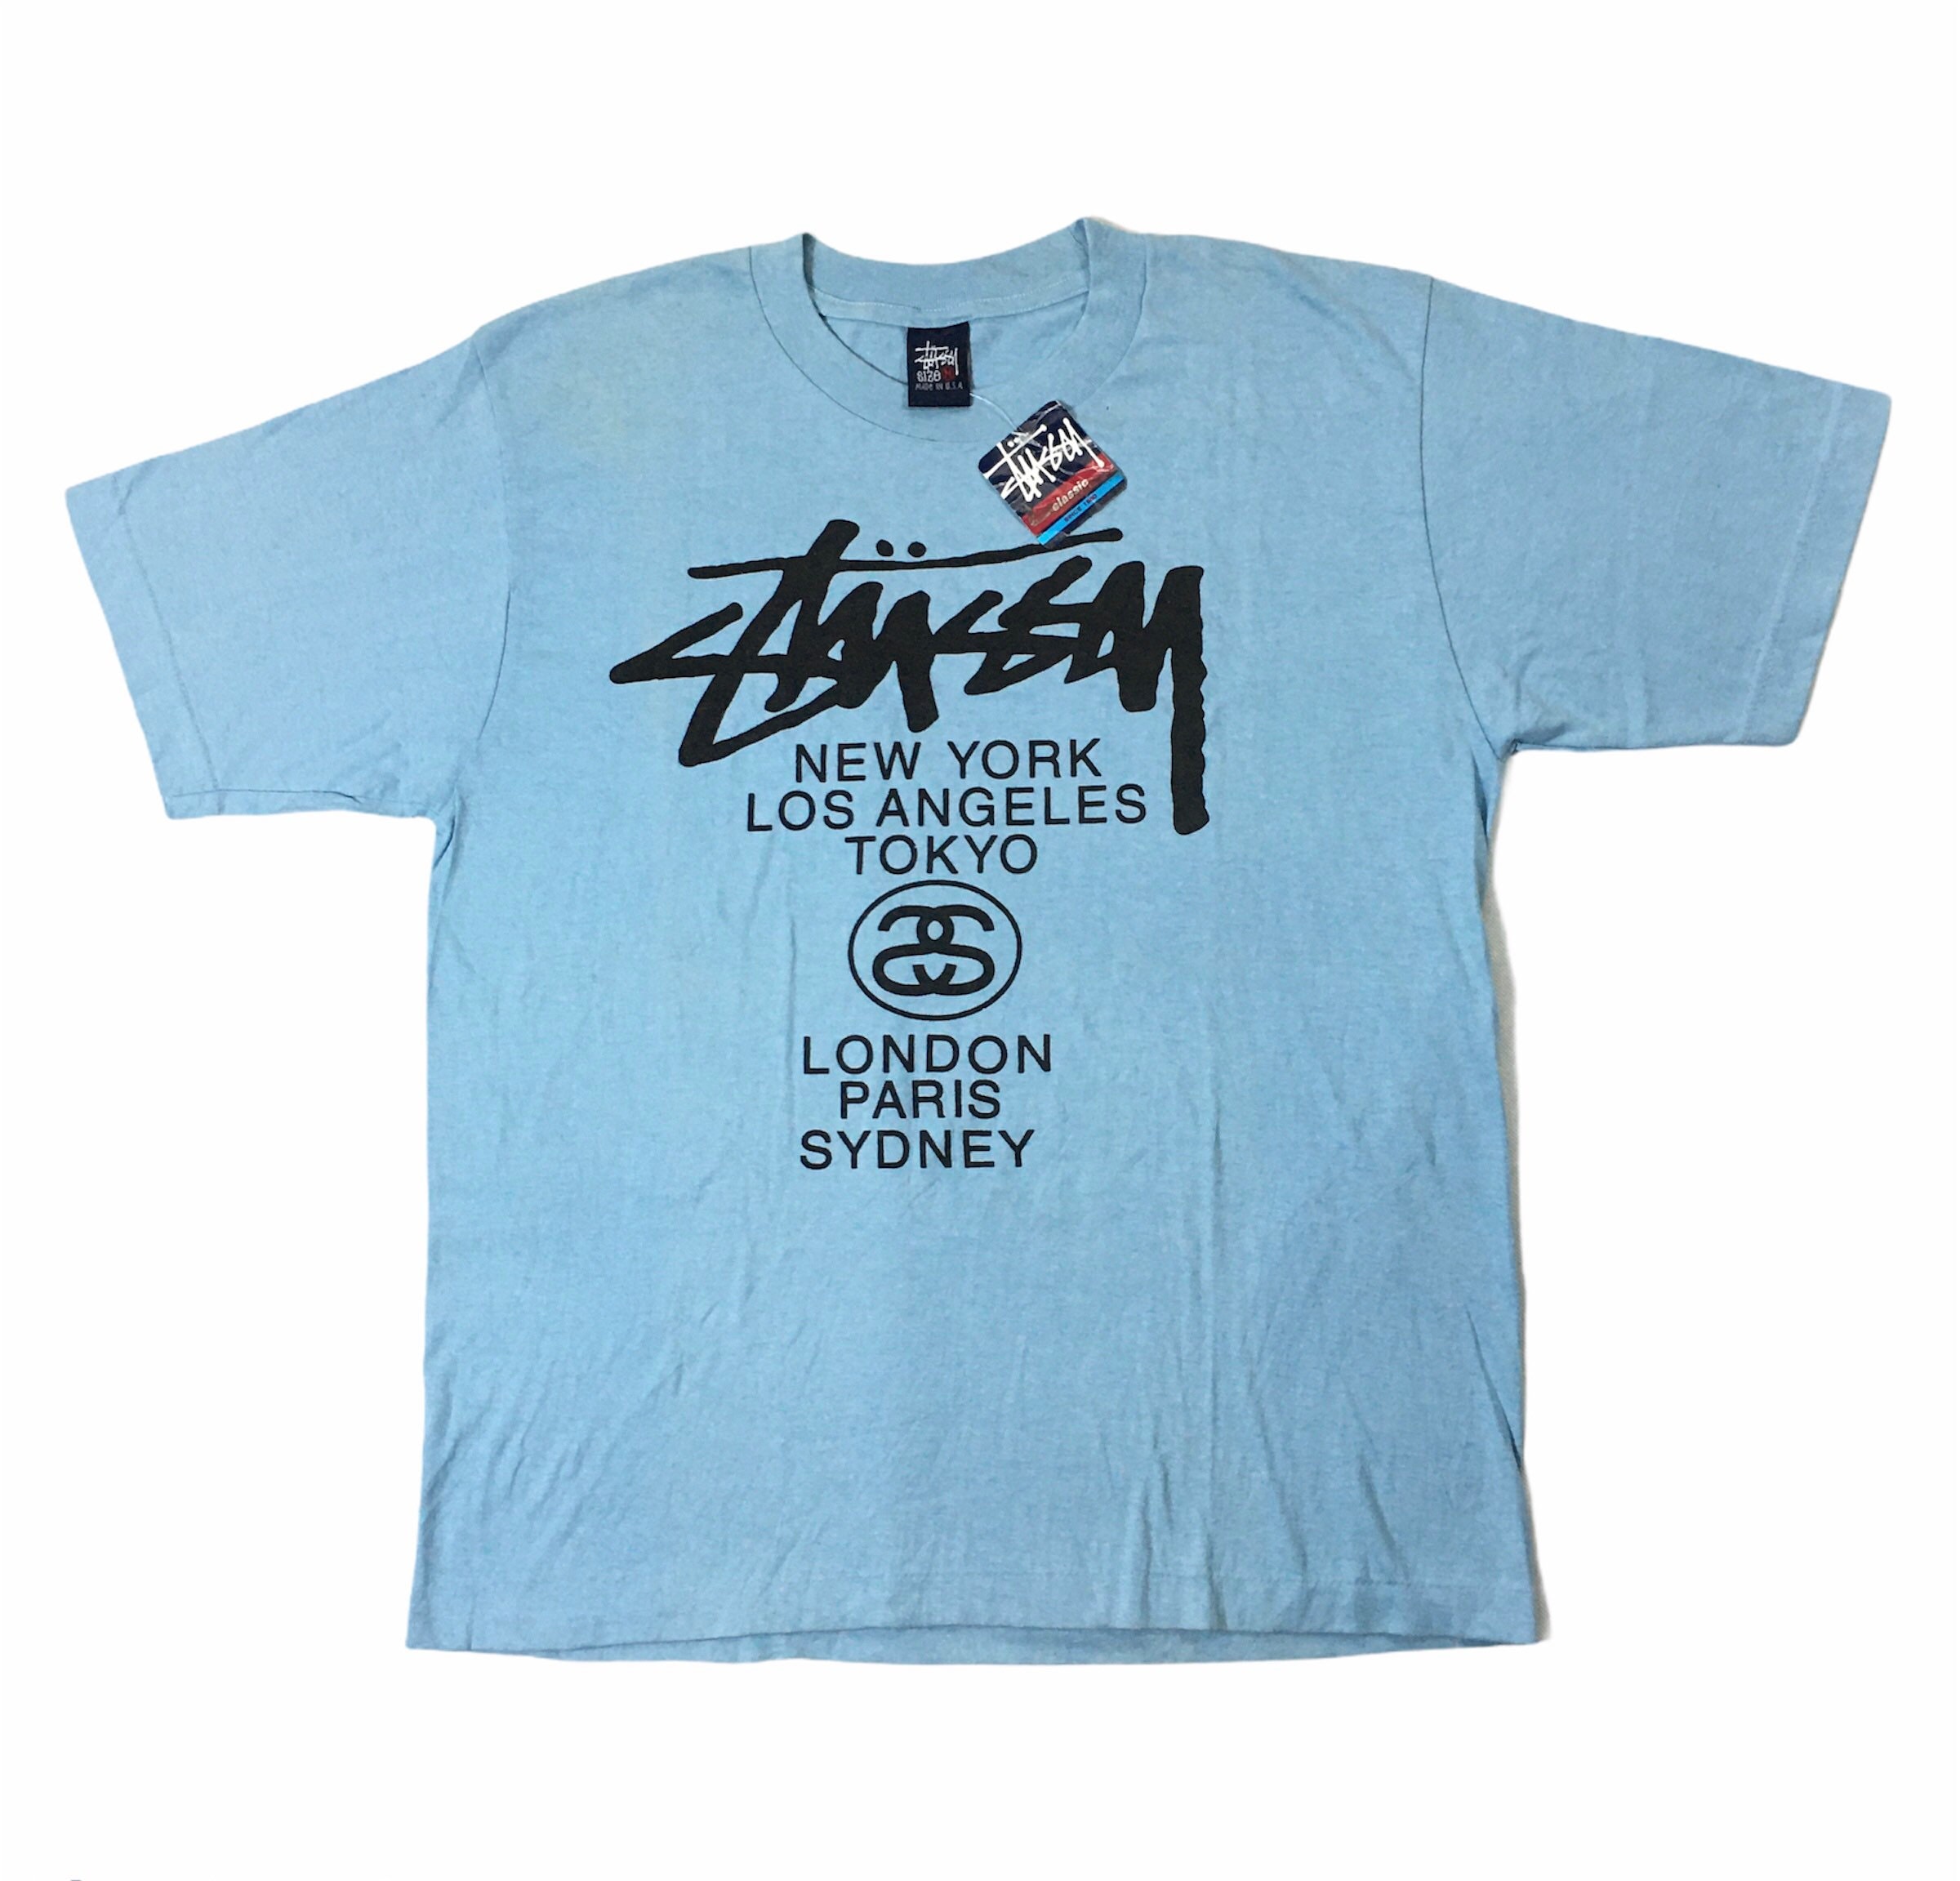 Stüssy World Tour Collection – Stüssy